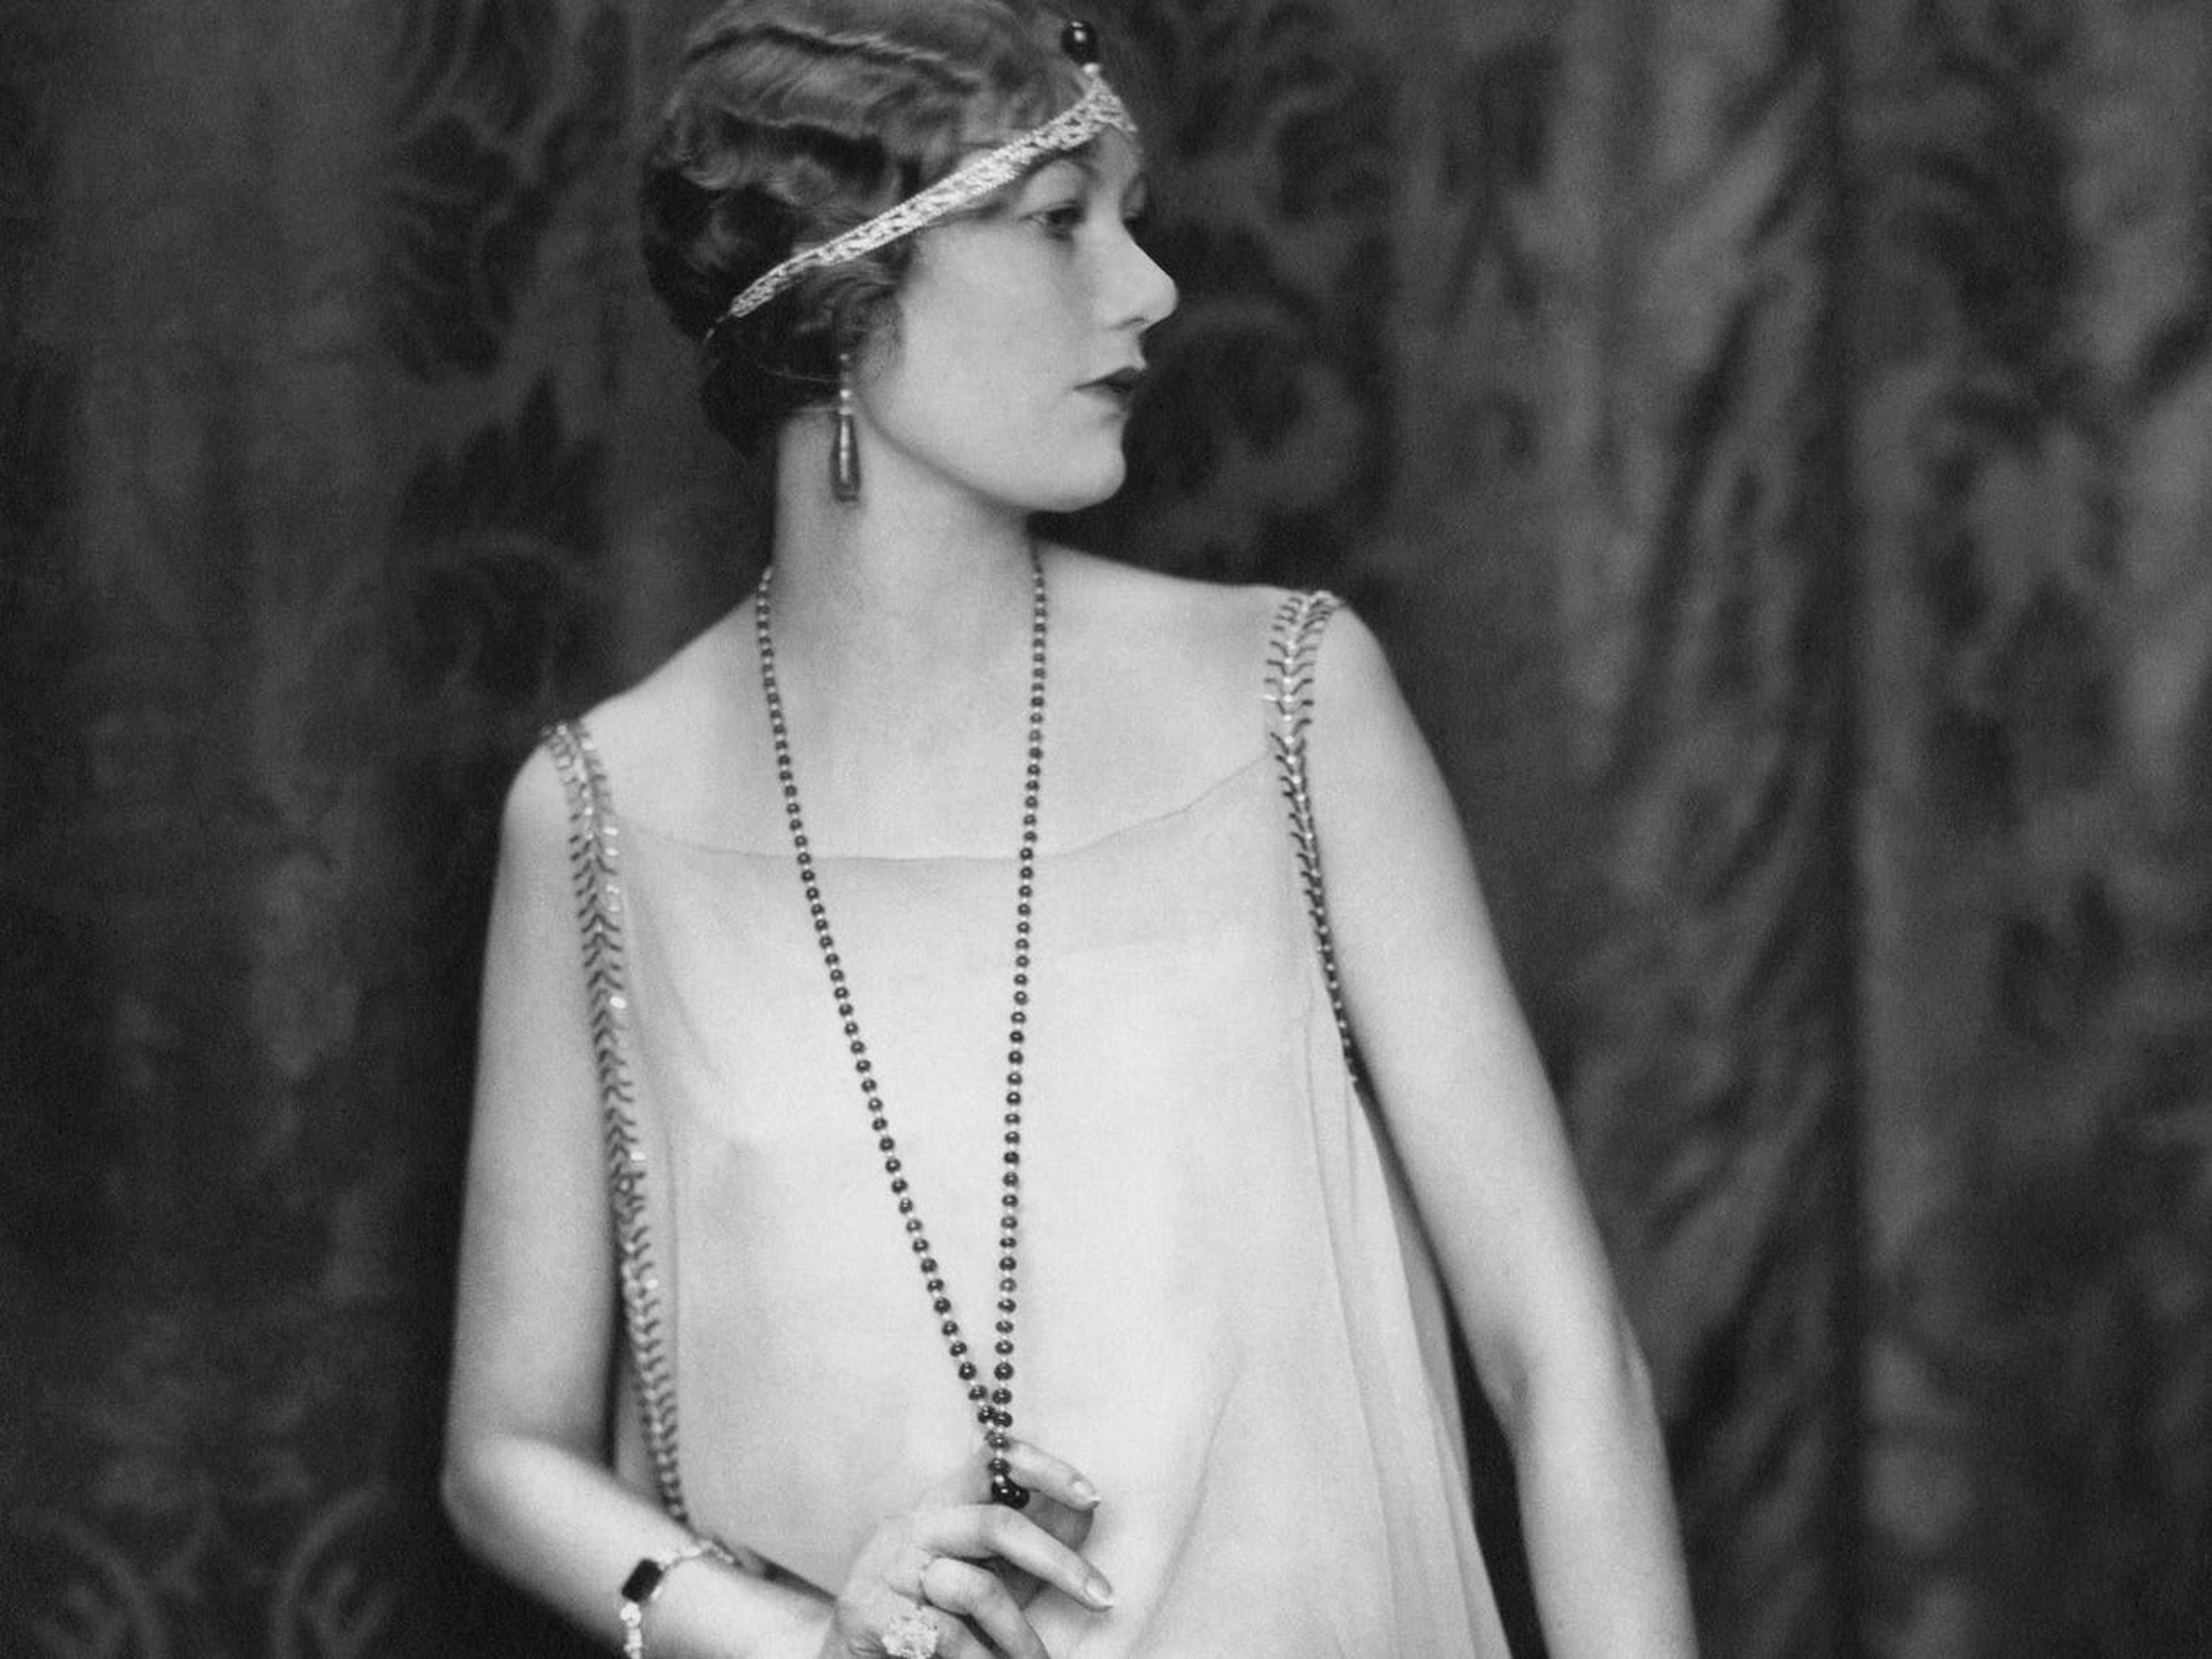 Una mujer en la década de 1920 muestra la moda clásica de entonces.